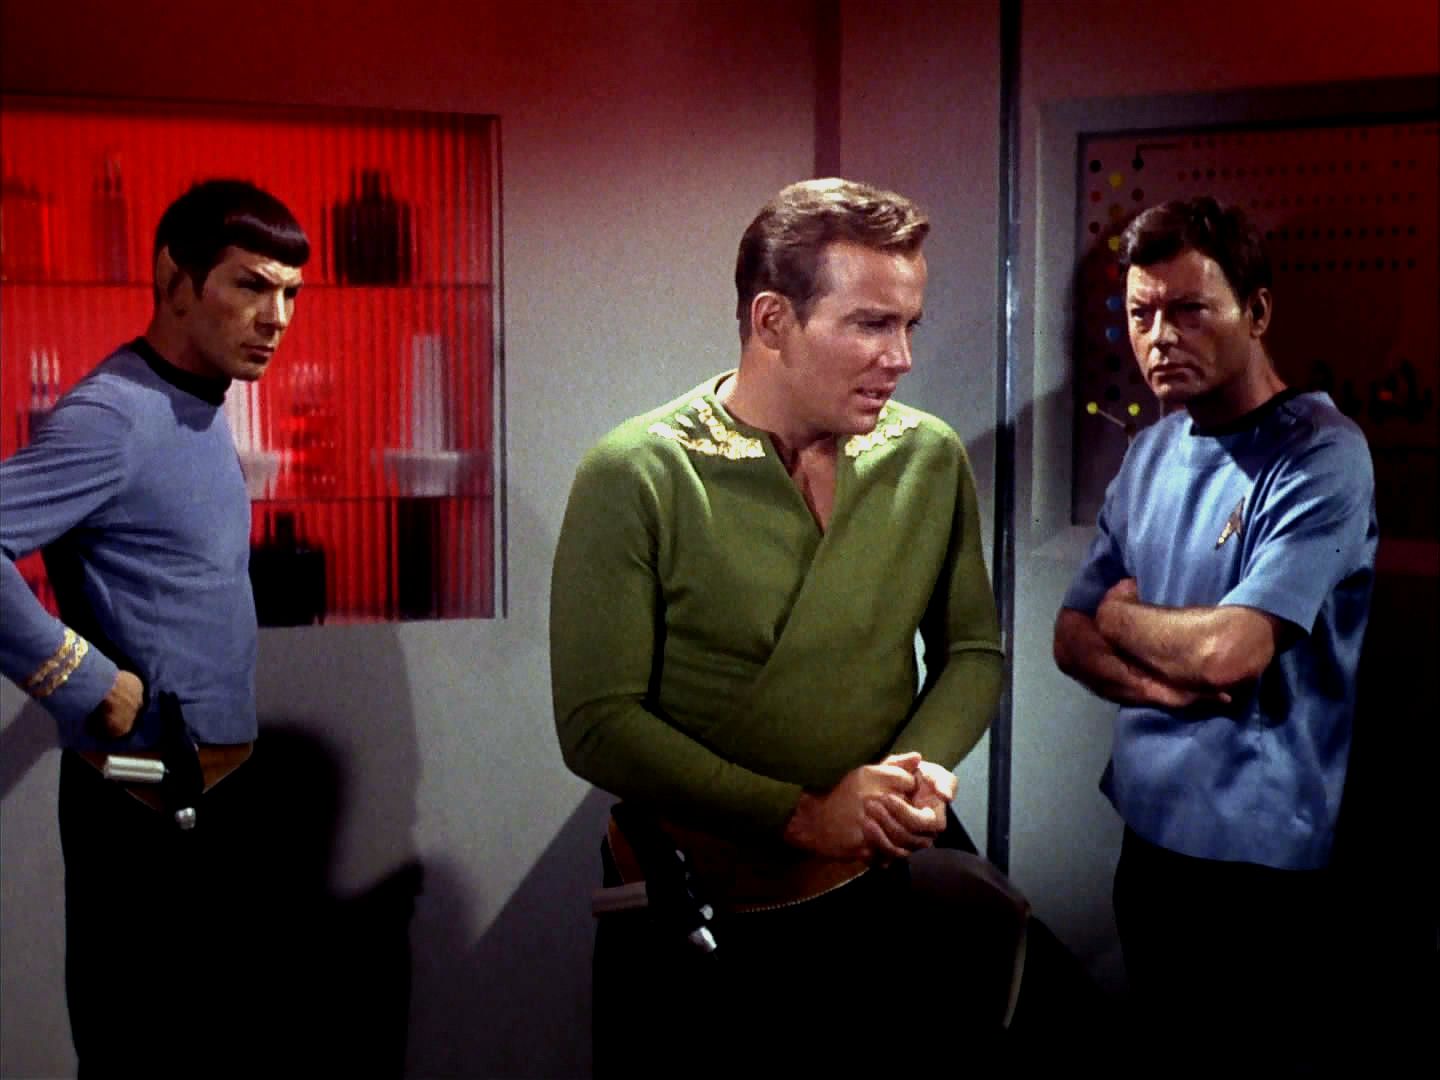 Opraveným transportérem zkusili sjednotit obě verze alfanského psíka, ten ale nepřežil. Spock věří, že to bylo šokem. Kapitán se musí rychle rozhodnout, jinak jeho muži dole zmrznou.